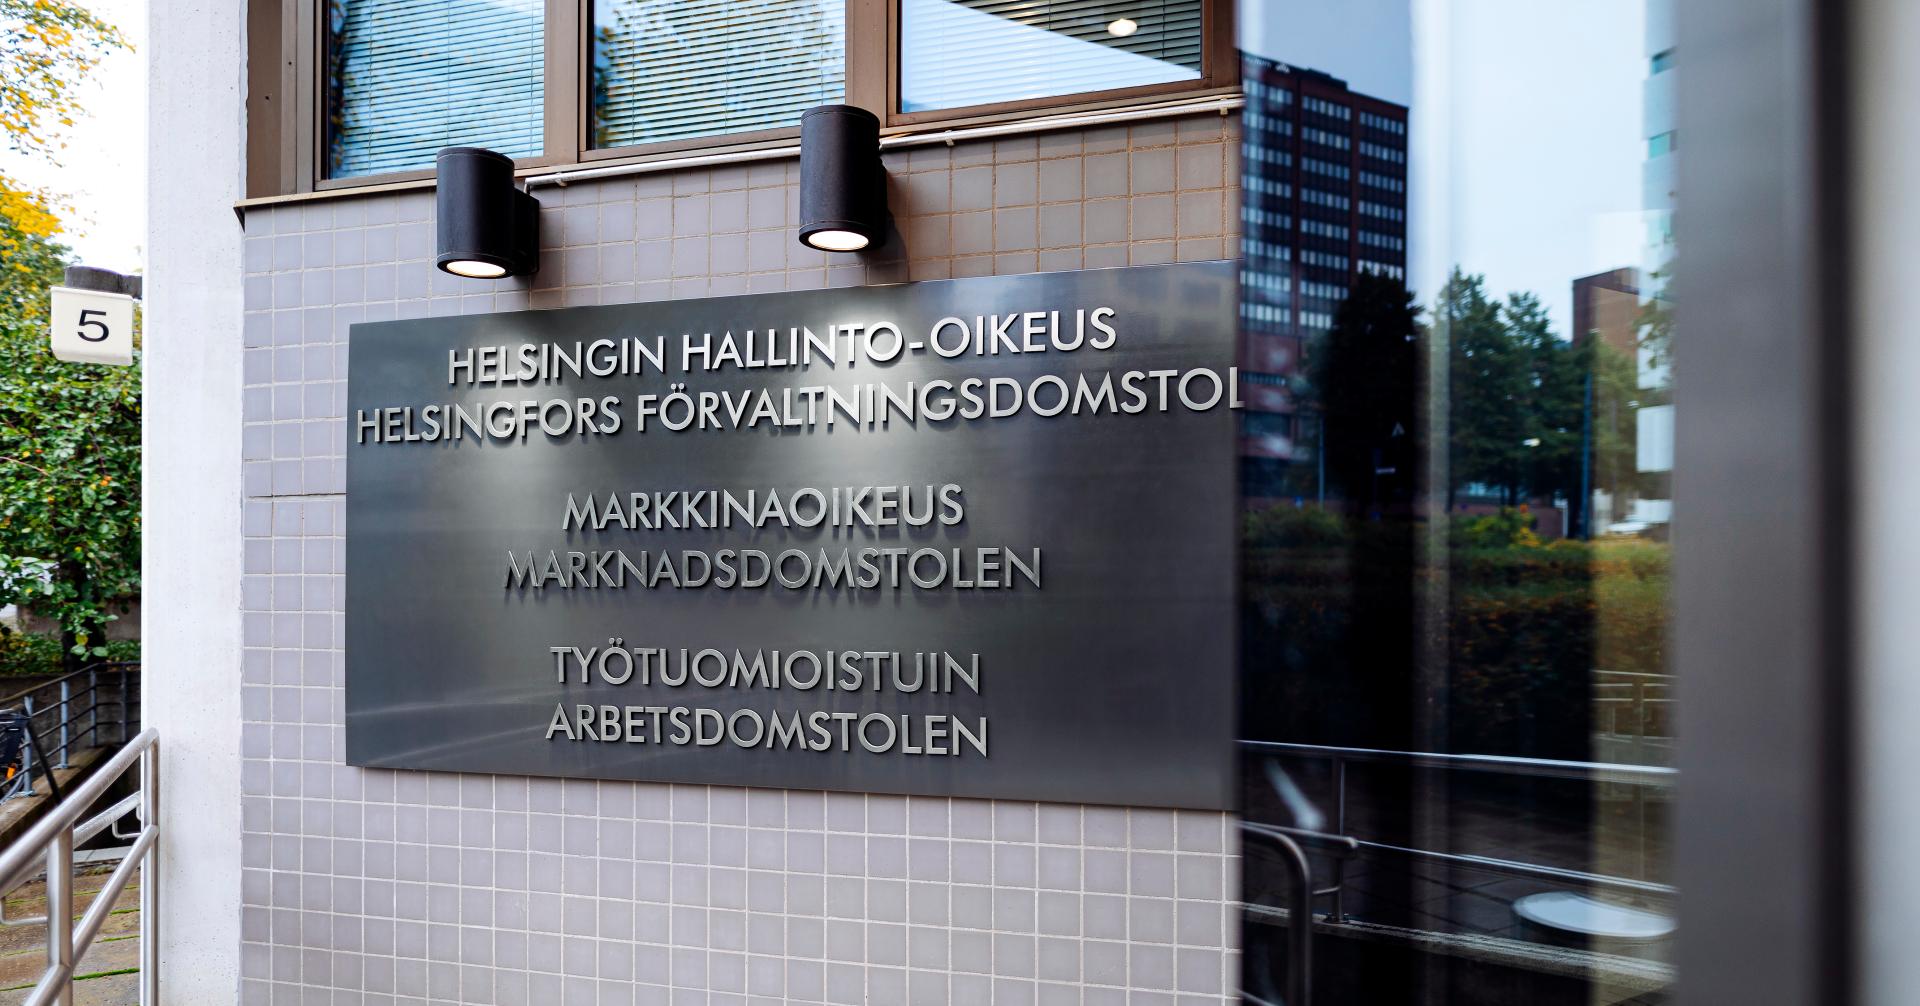 Työtuomioistuimet-talon ulkokyltti, jossa lueteltu Helsingin hallinto-oikeuden, Markkinaoikeuden ja Työtuomioistuimen nimet.